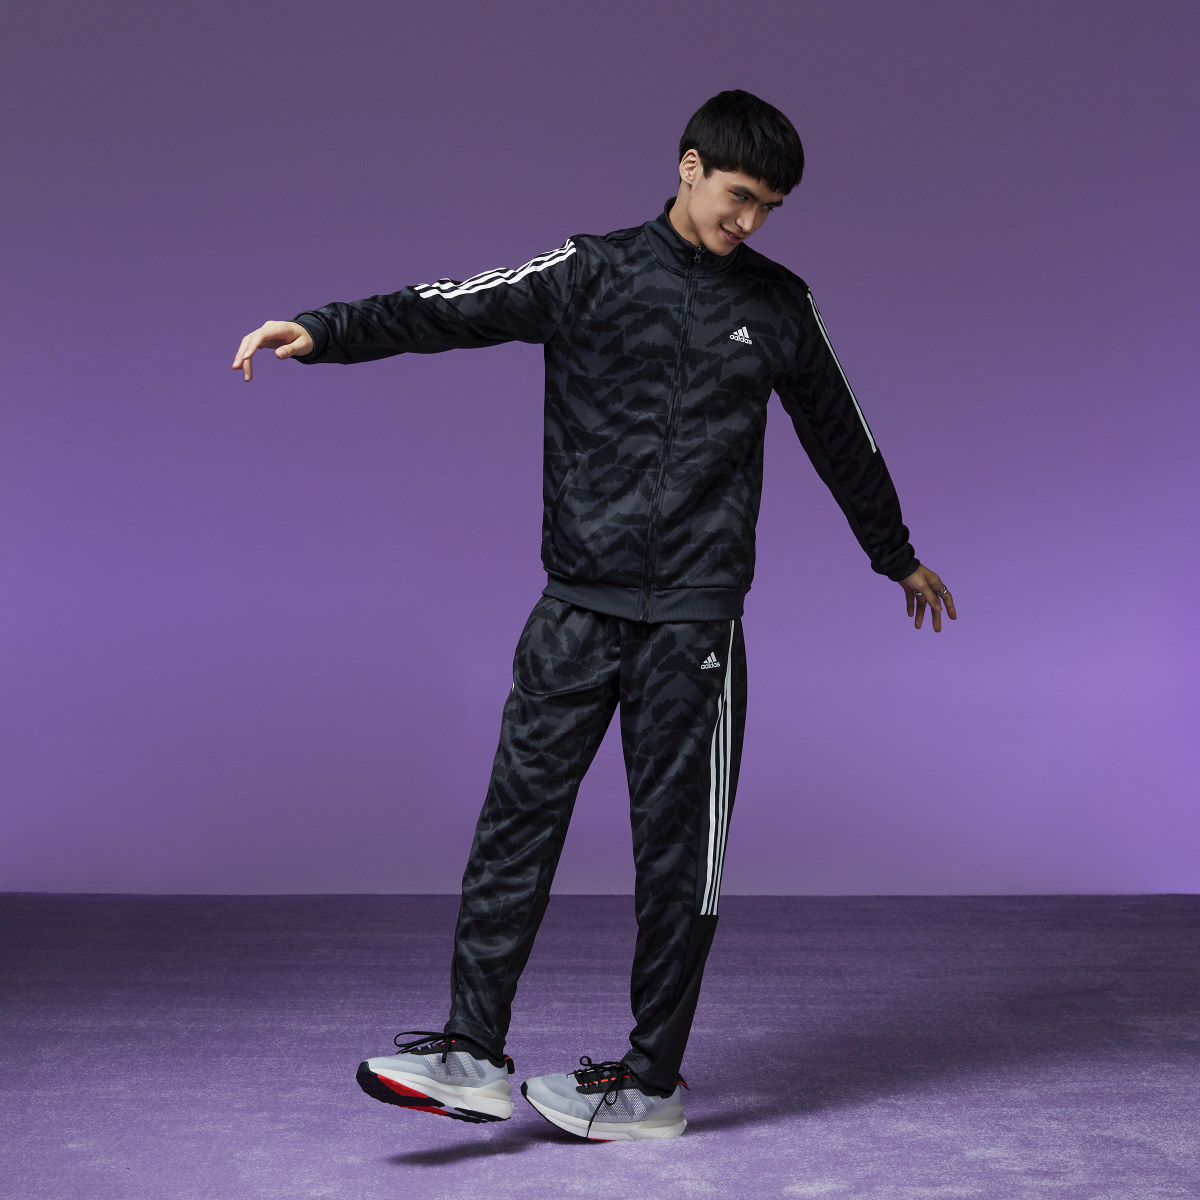 Adidas Tiro Suit-Up Lifestyle Trainingshose. 8